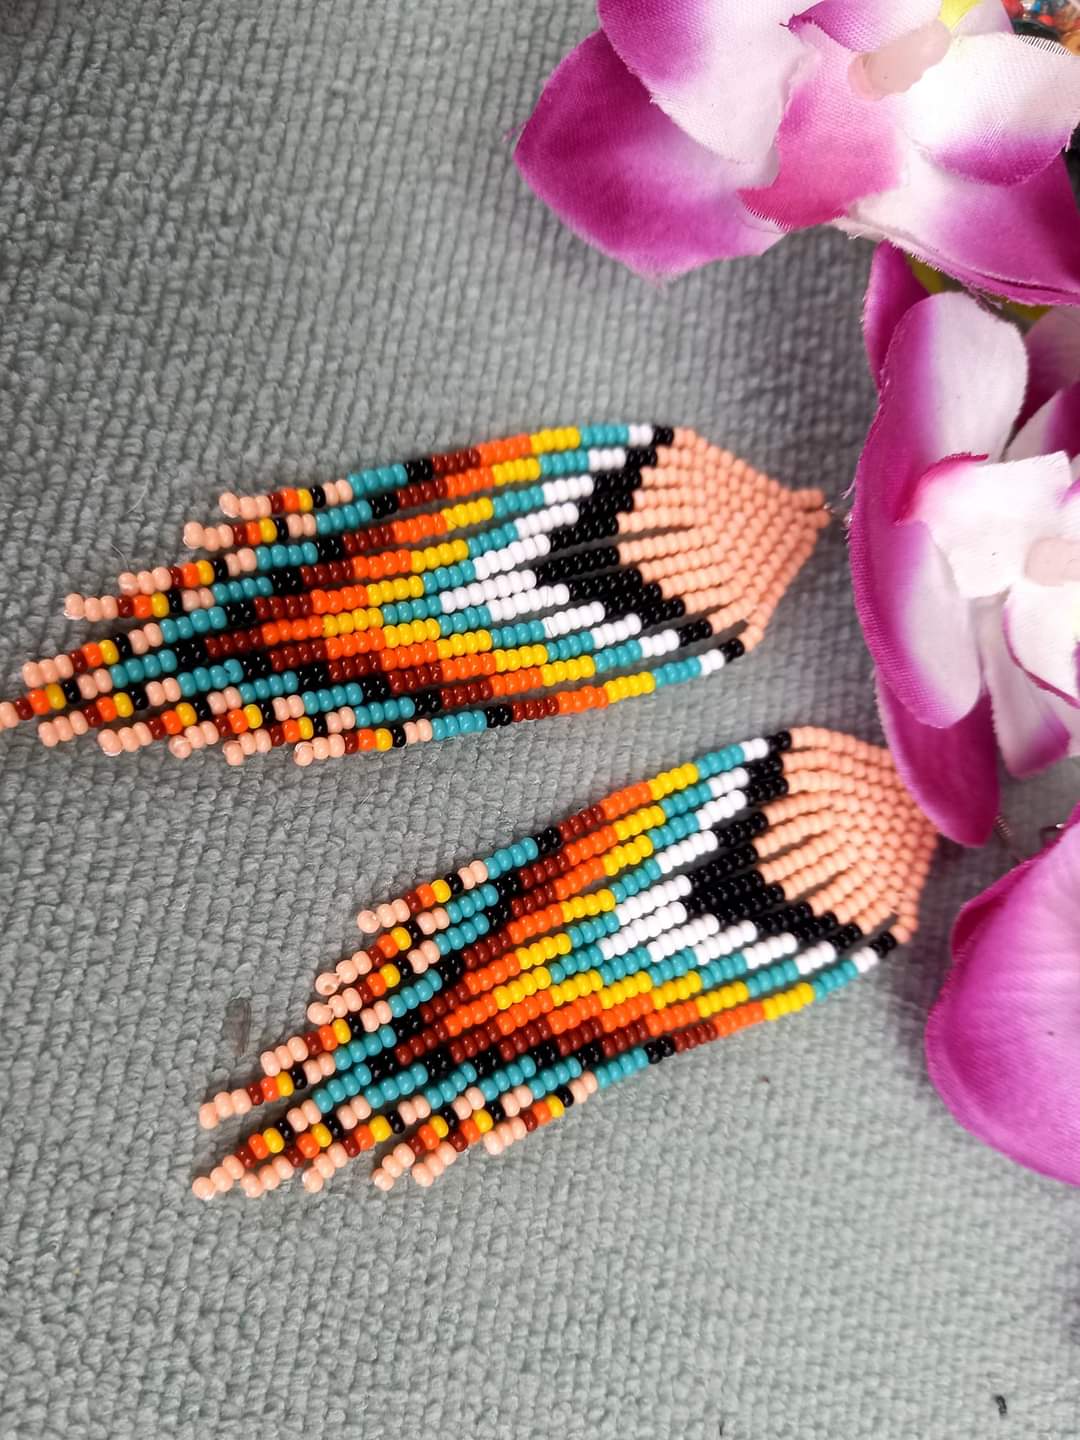 Beautiful Earrings Handmade in Ecuador by Sitlaly Jewelry 4e